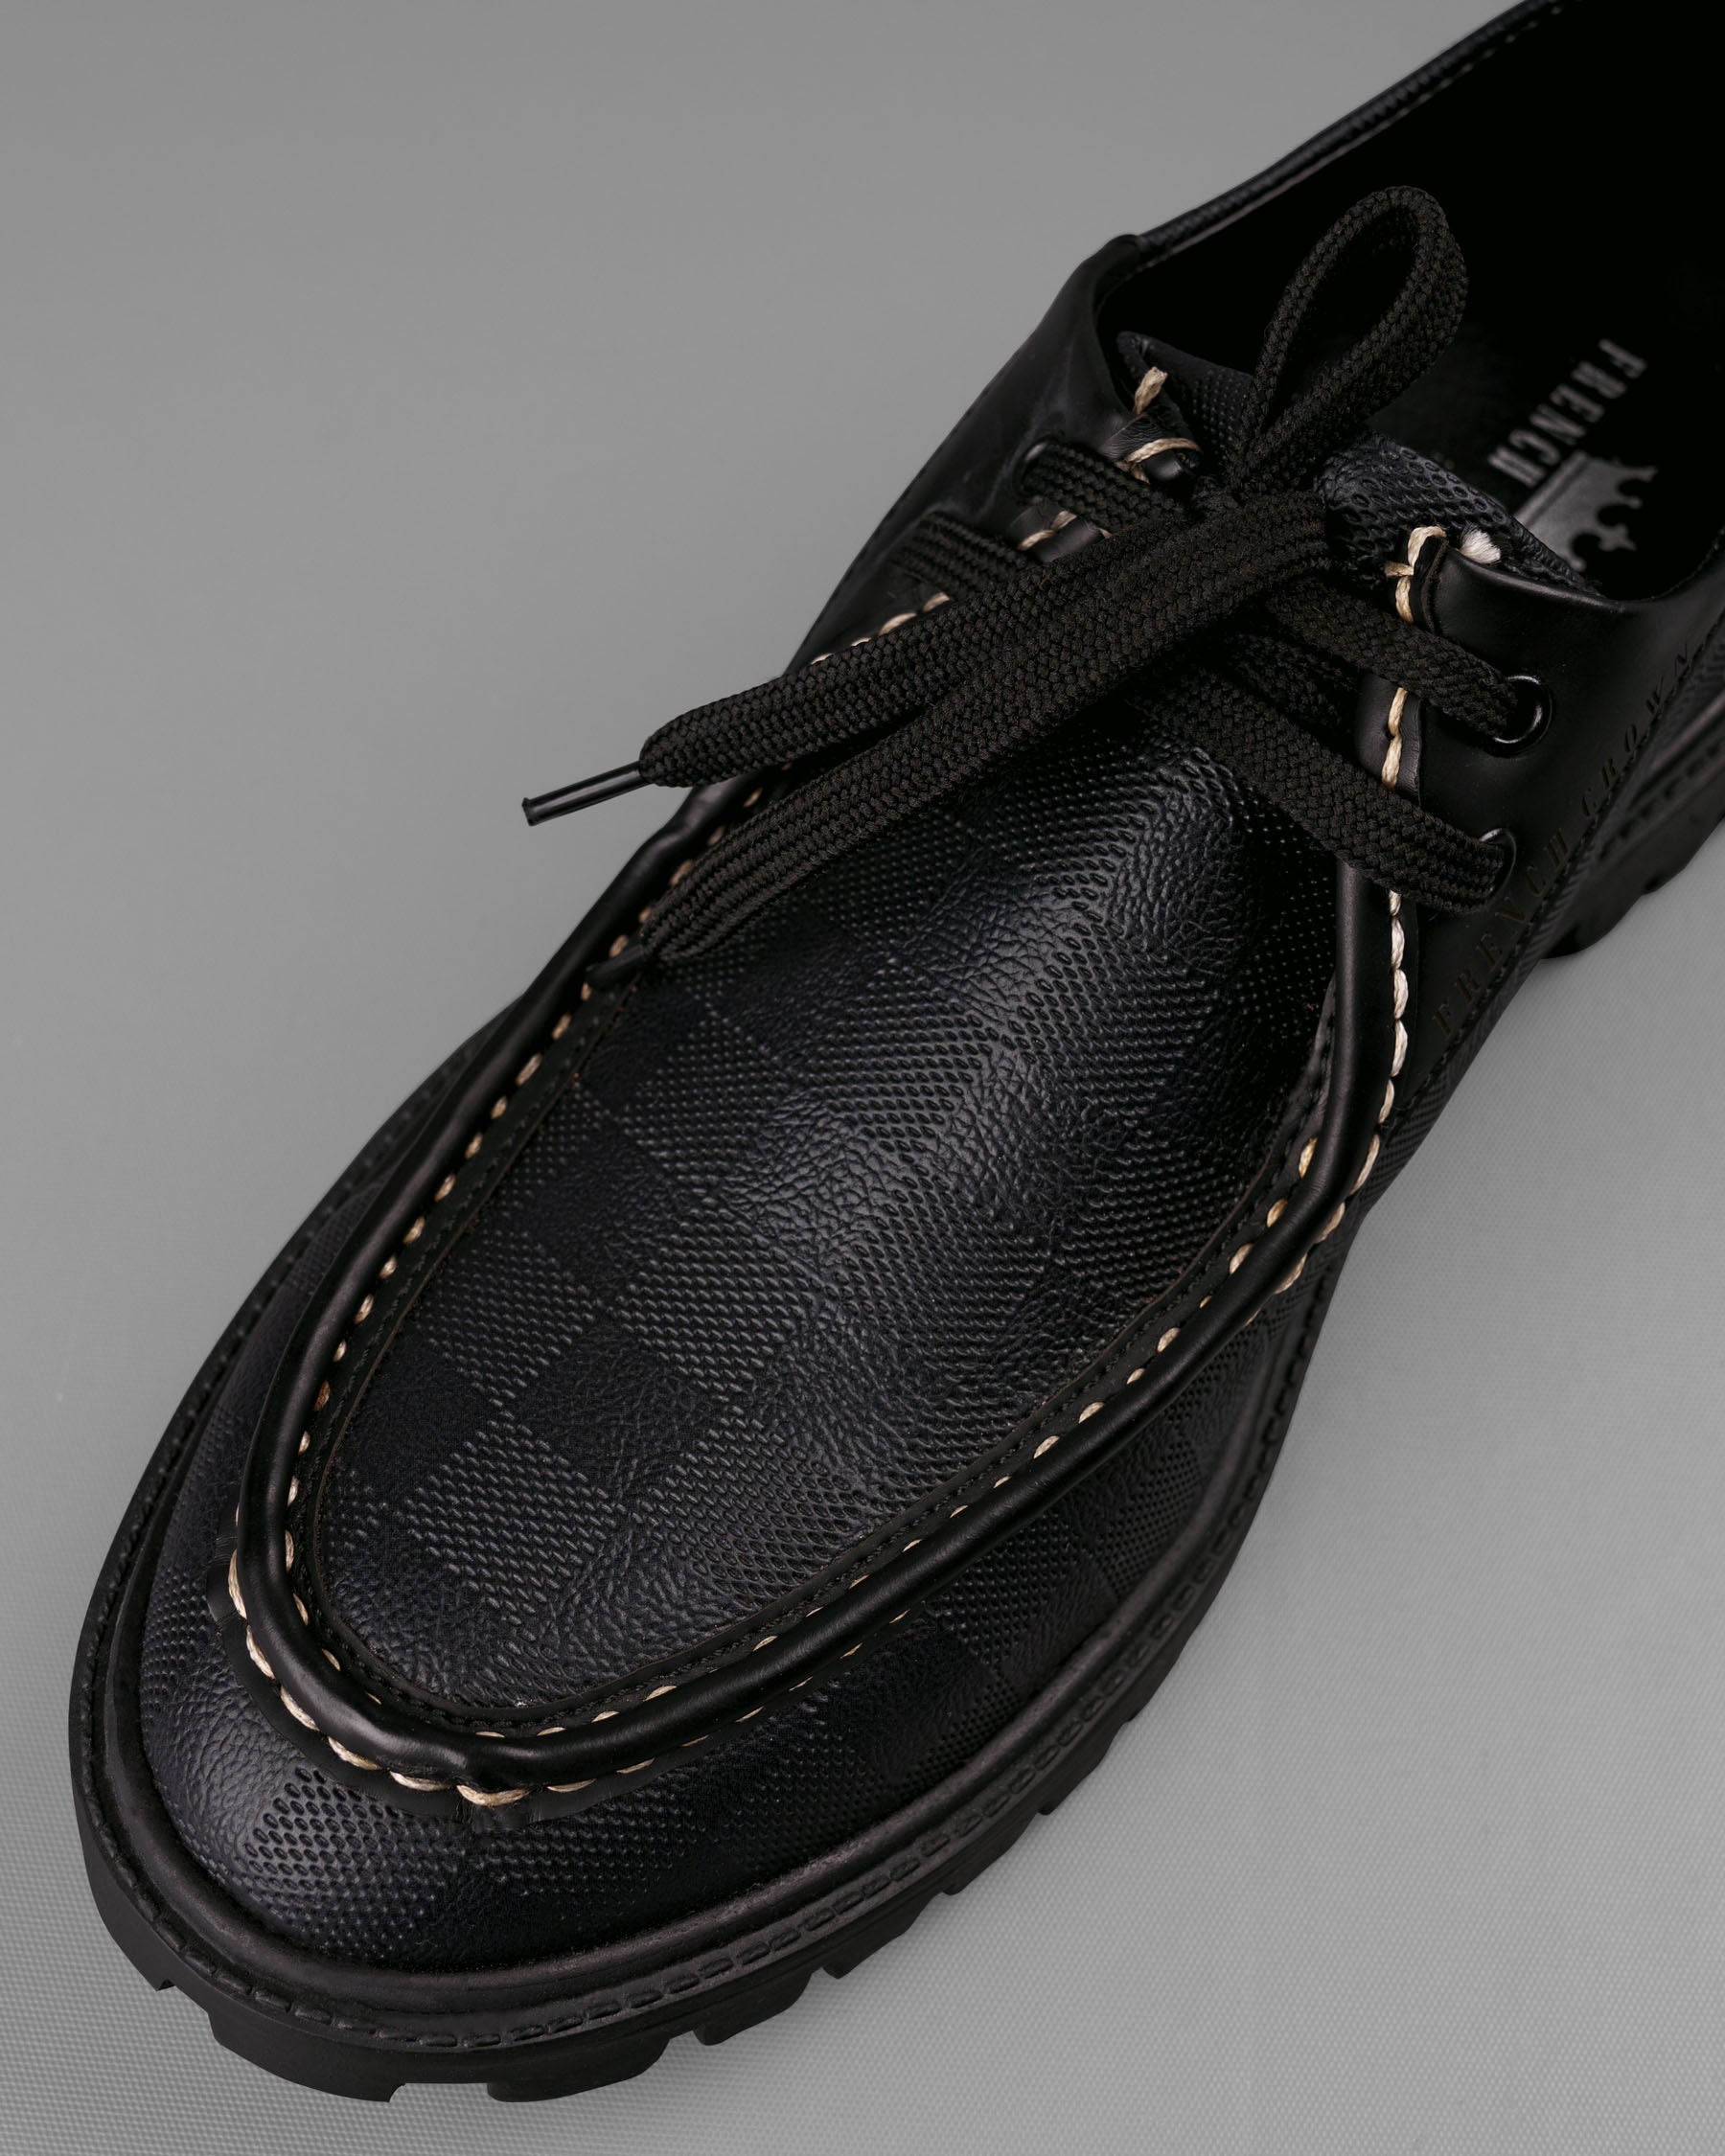 Jade Black Chessboard Patterned Boat Shoes FT005-6, FT005-7, FT005-8, FT005-9, FT005-10